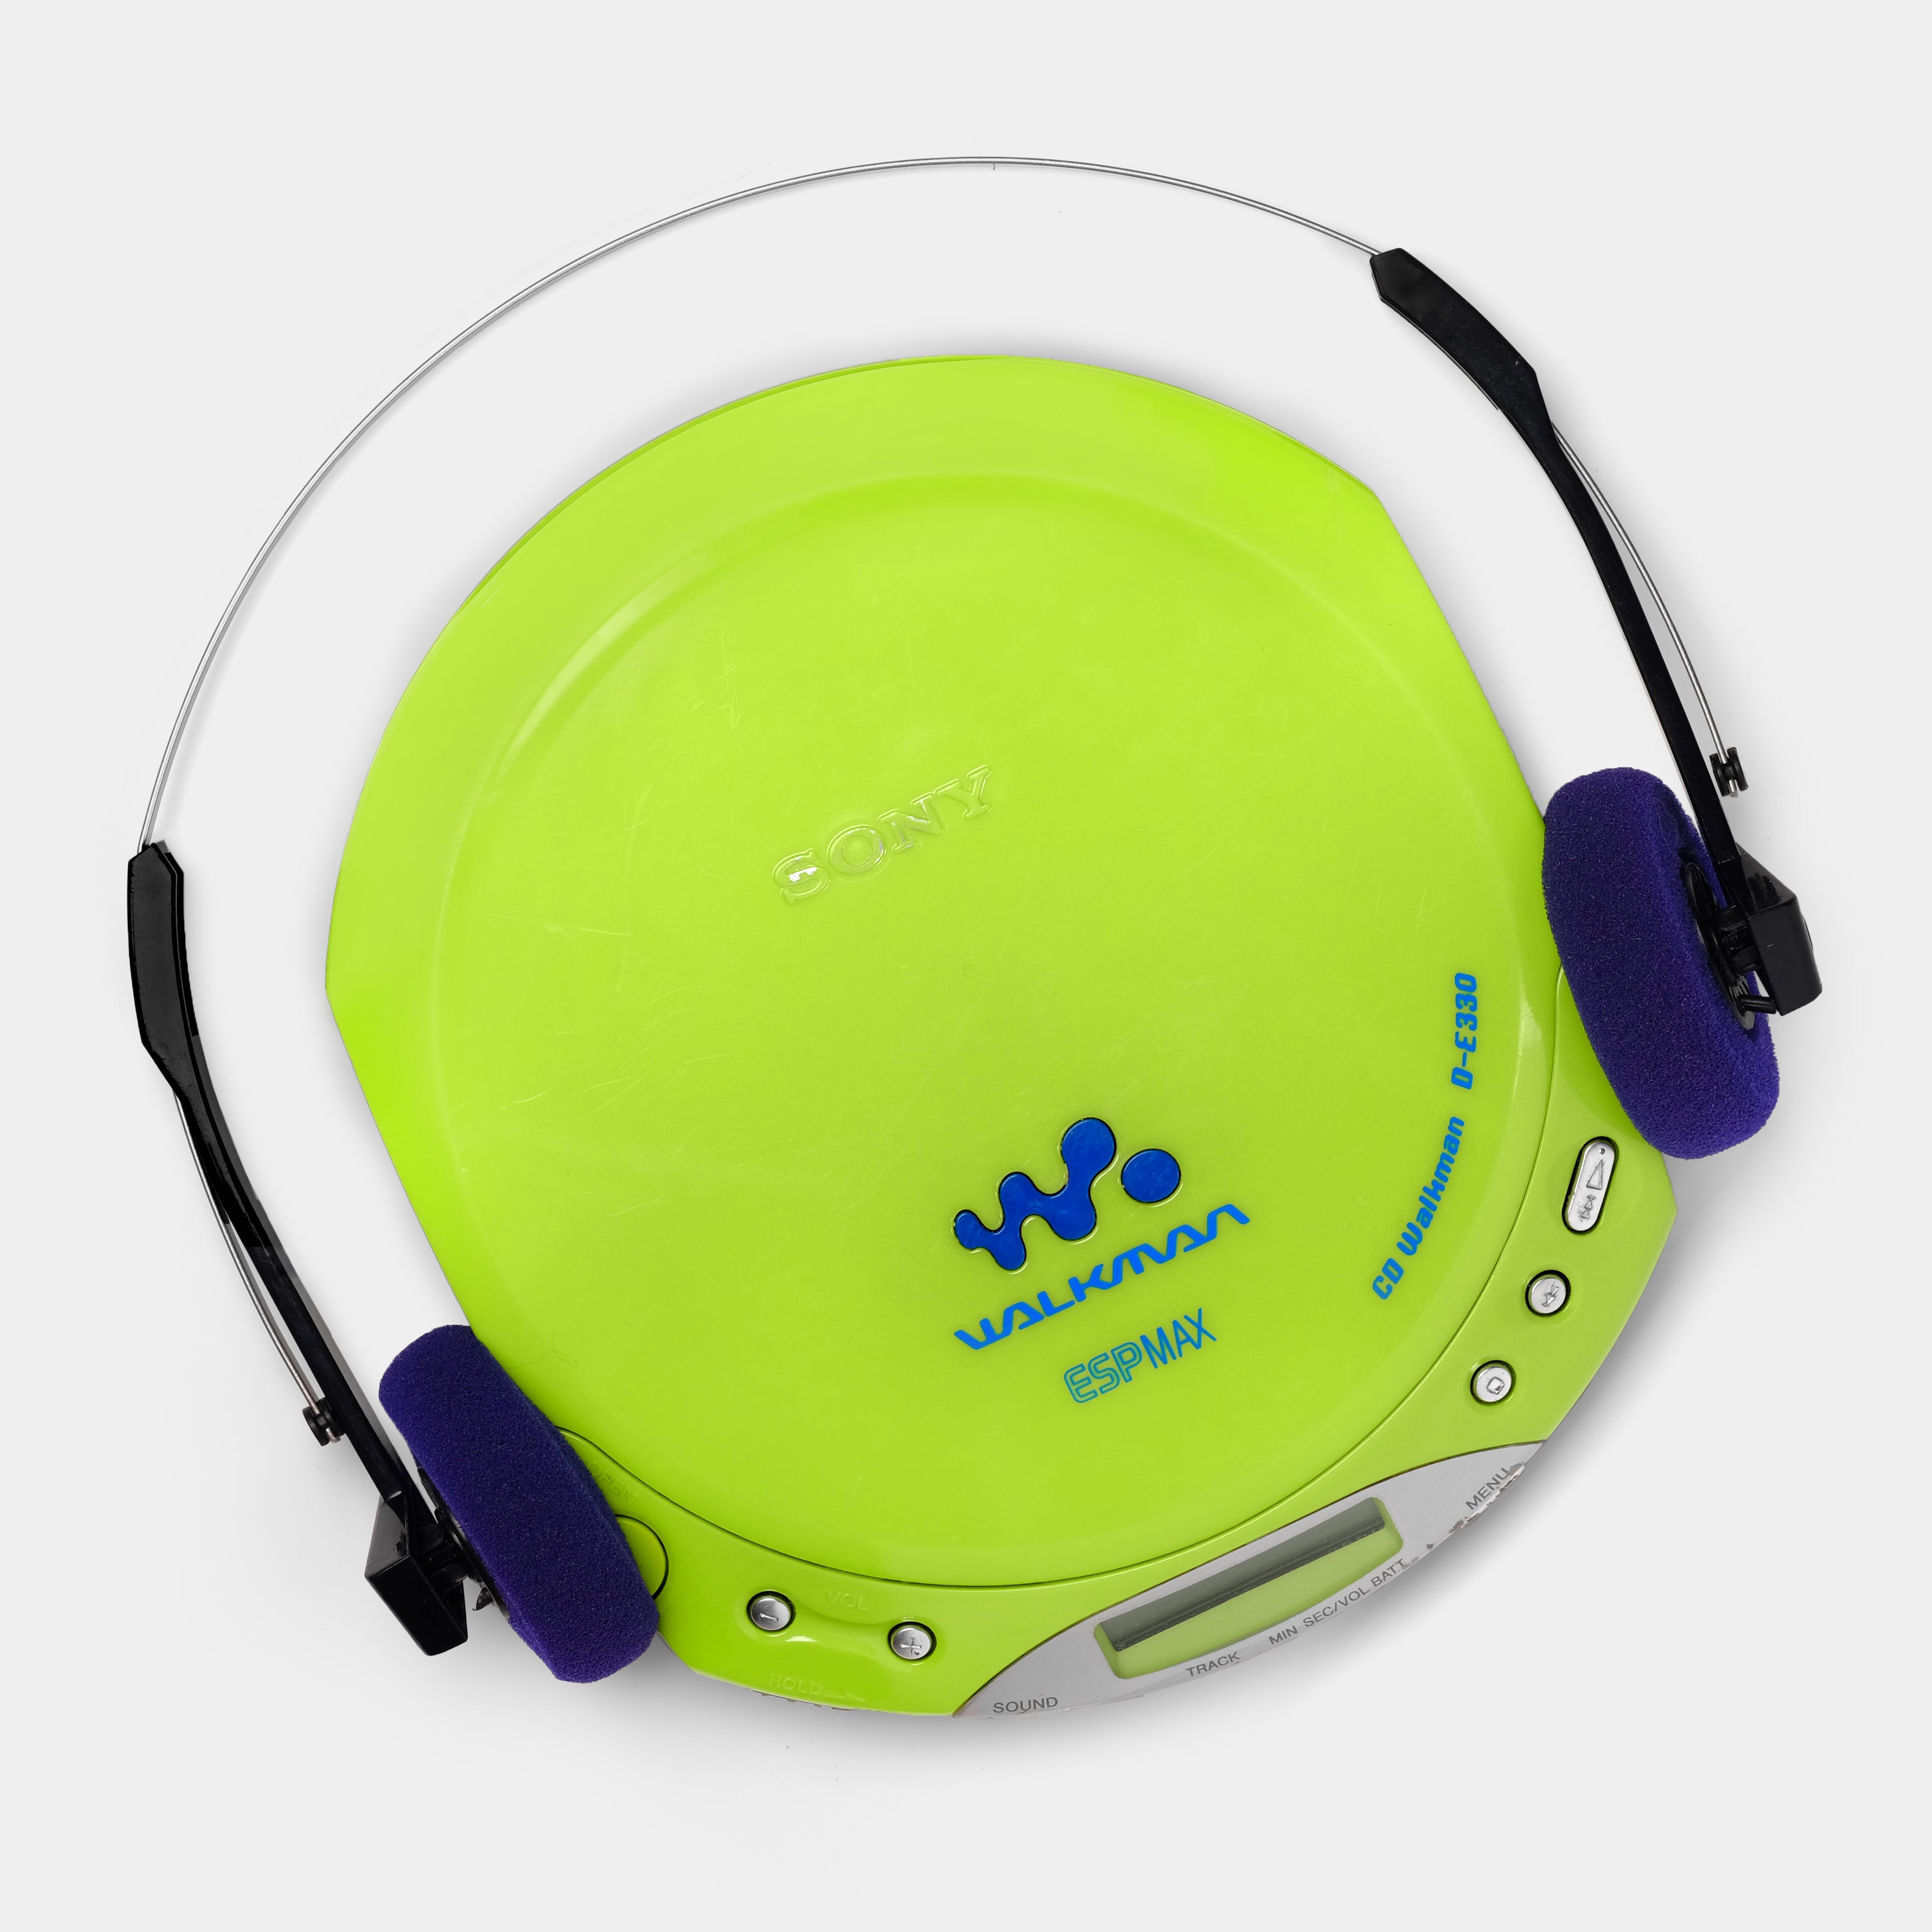 Sony D-E330 Green Portable CD Player (B-Grade)